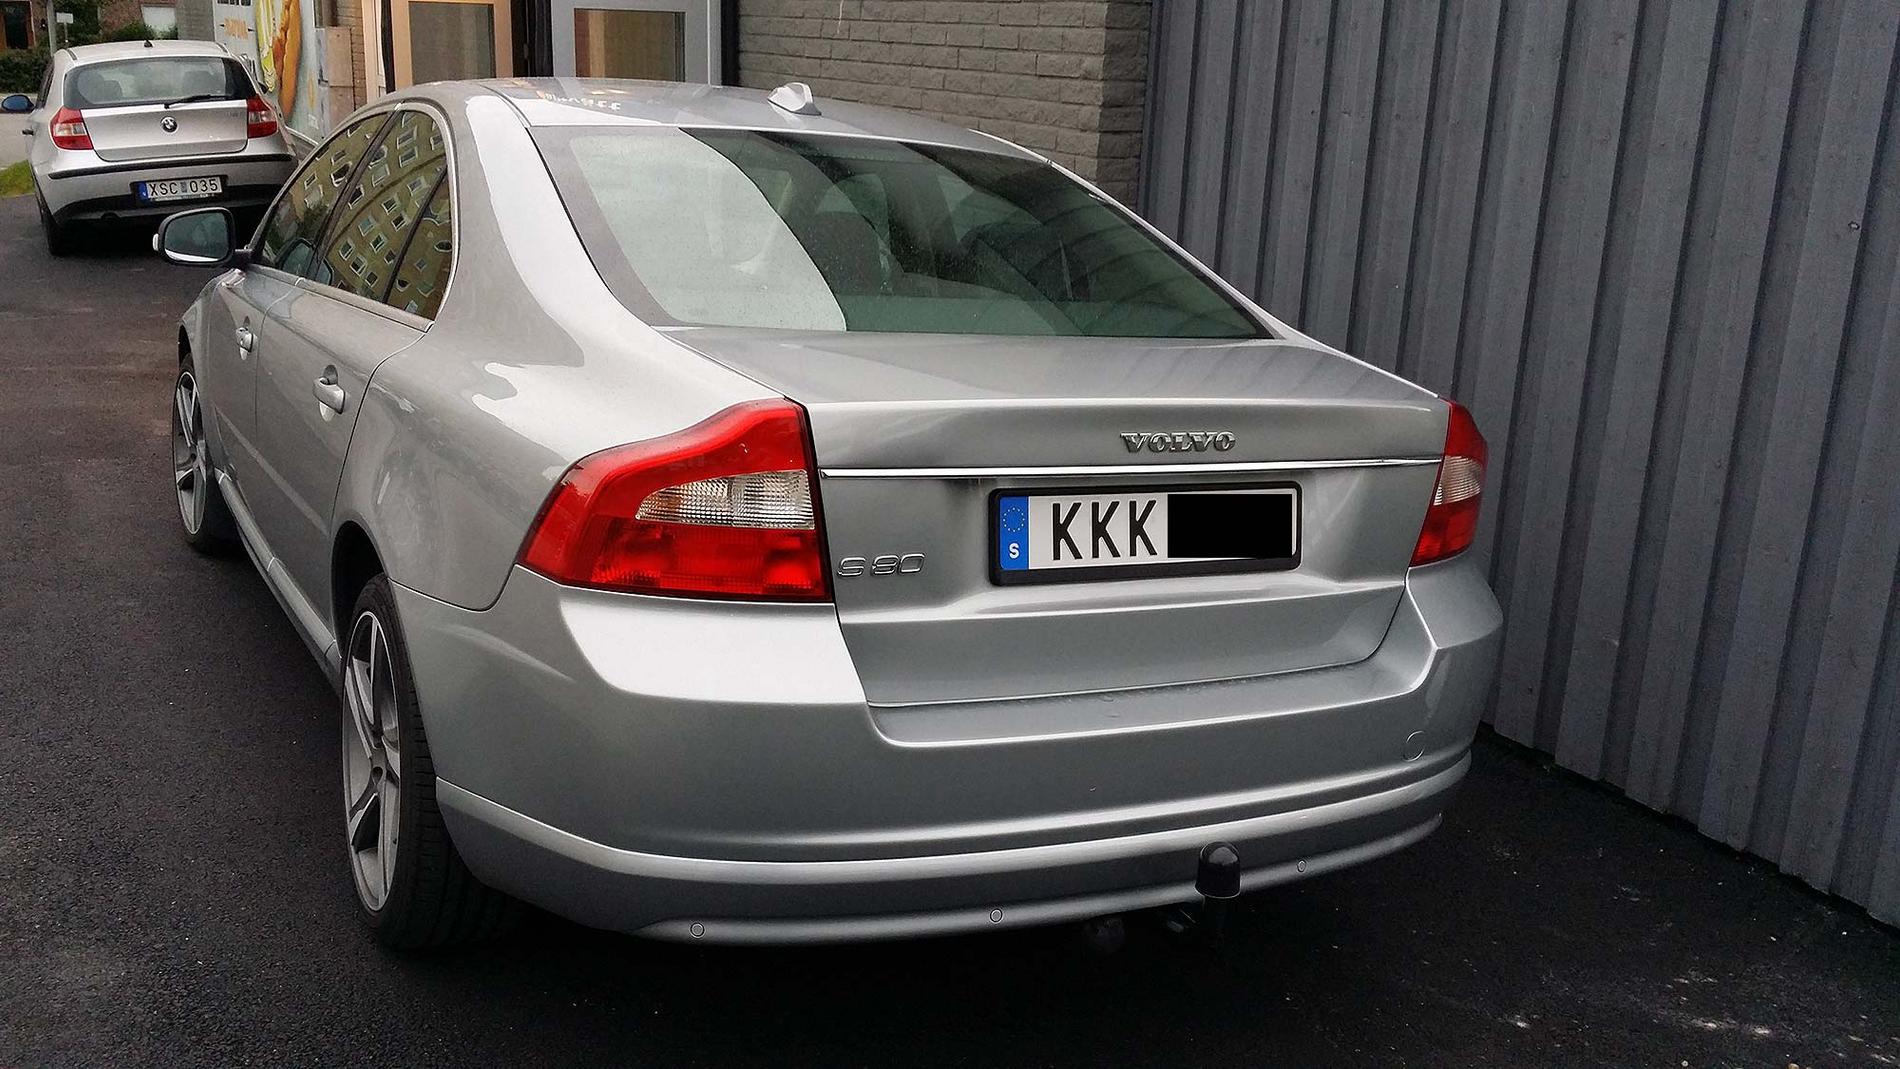 En Aftonbladet-läsare har uppmärksammat en bil med reg-skylten KKK.